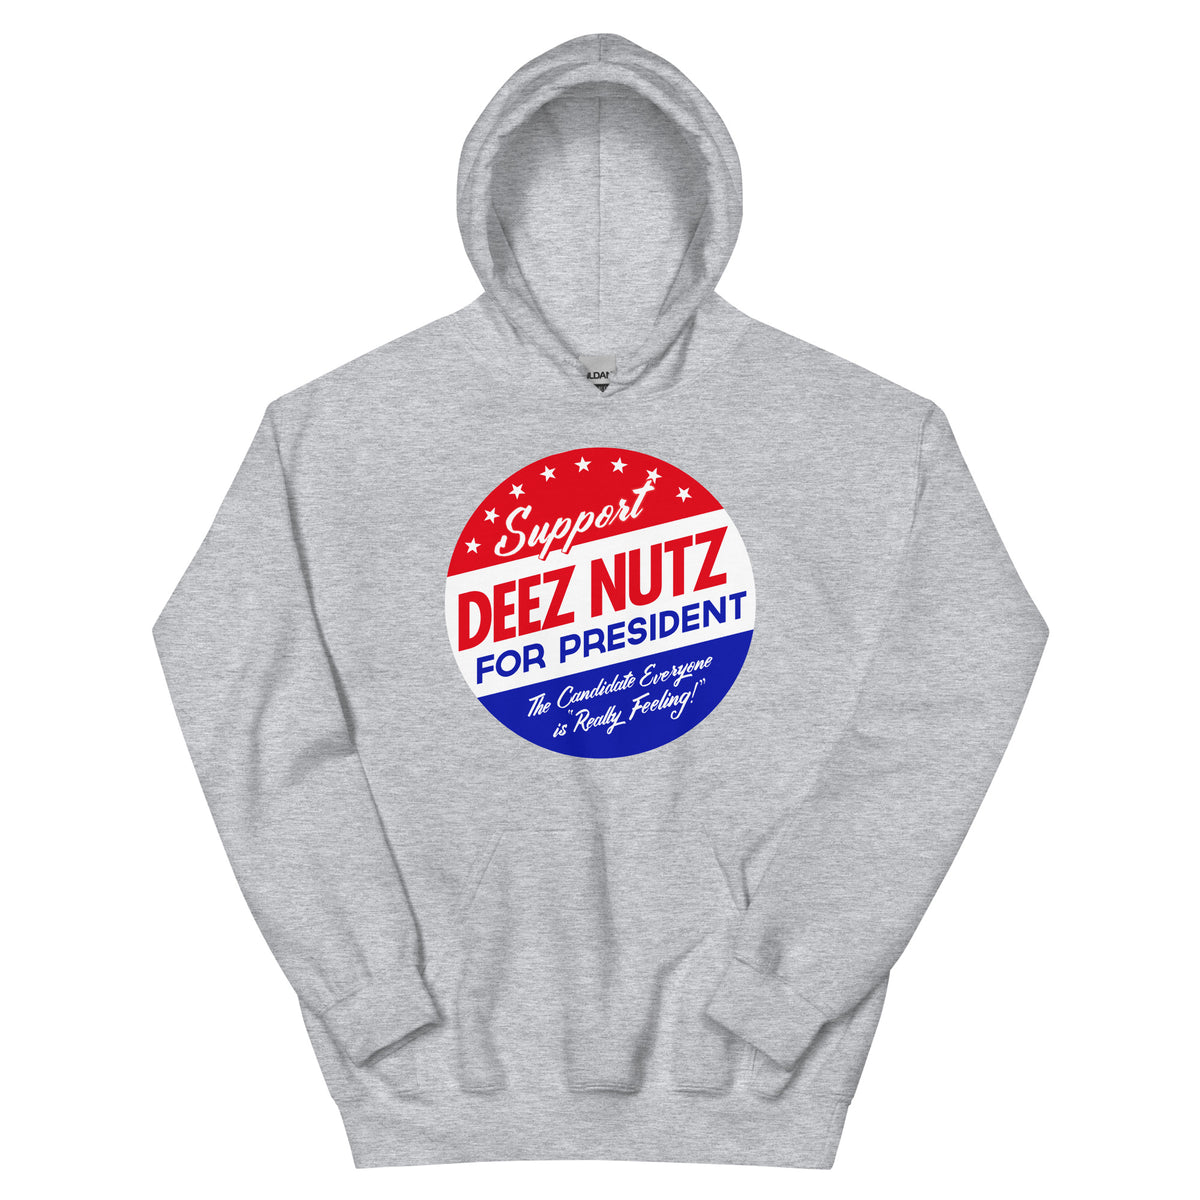 Deez Nuts for President Hoodie Sweatshirt